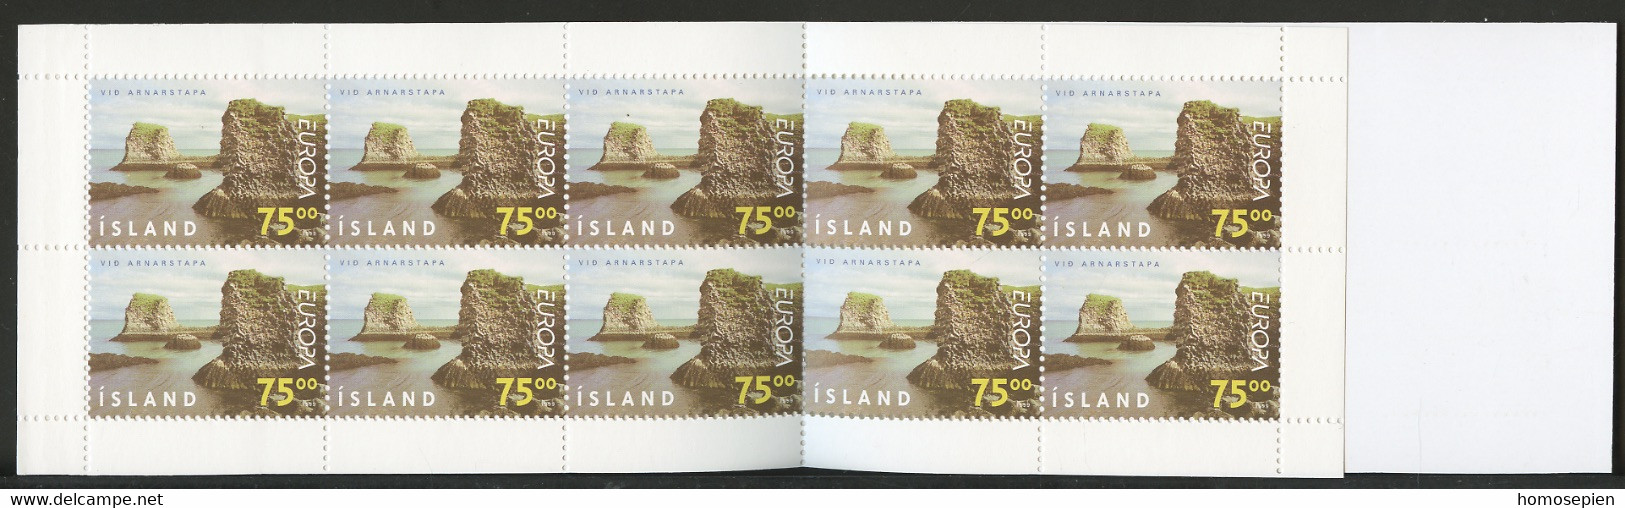 Islande - Island - Iceland Carnet 1999 Y&T N°C867 - Michel N°MH914 *** - 70k EUROPA - Booklets